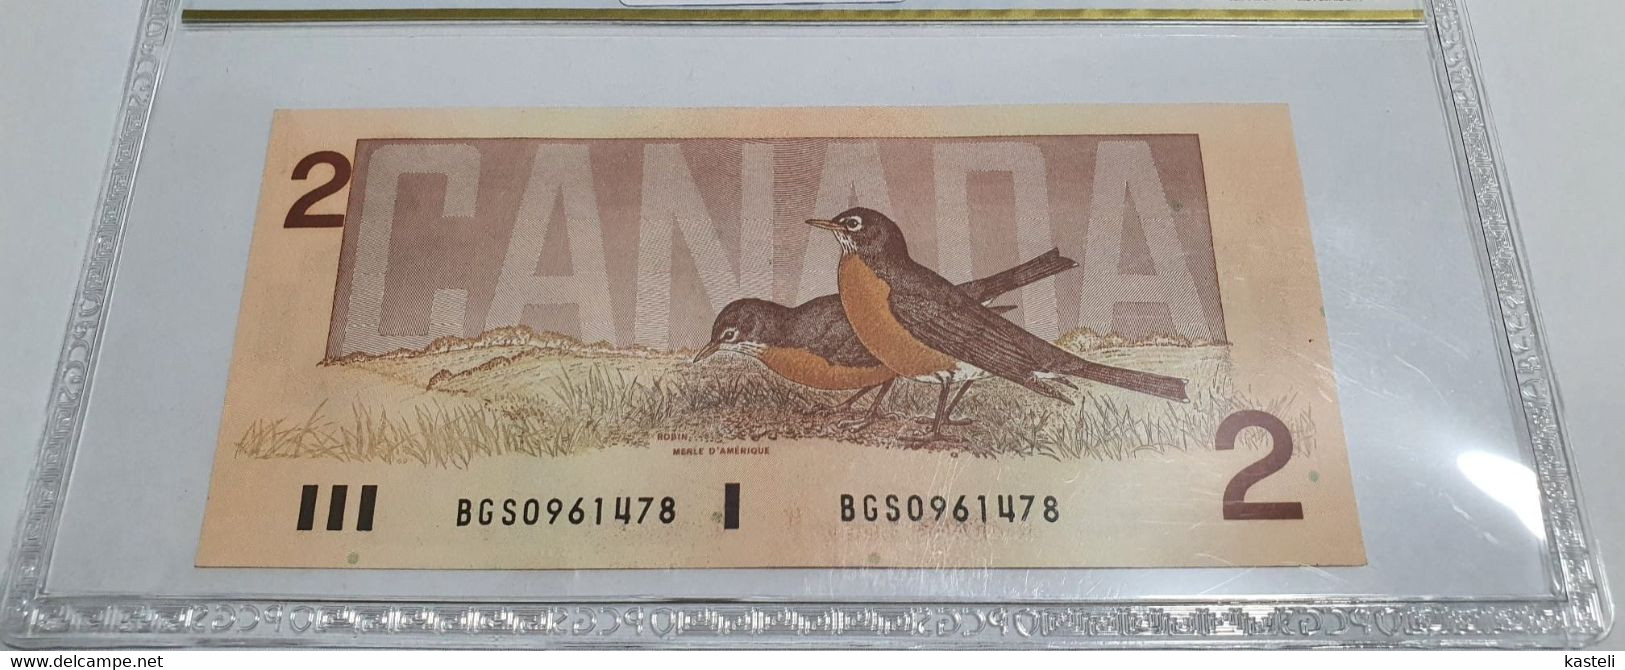 Jamaica,5$ - Canada 2$ - Nea Zealanda 3$ -  Bolivia .5 Centavos or 50 000 Pesos, Bolivia 1987  lot of 4  gradate bilete